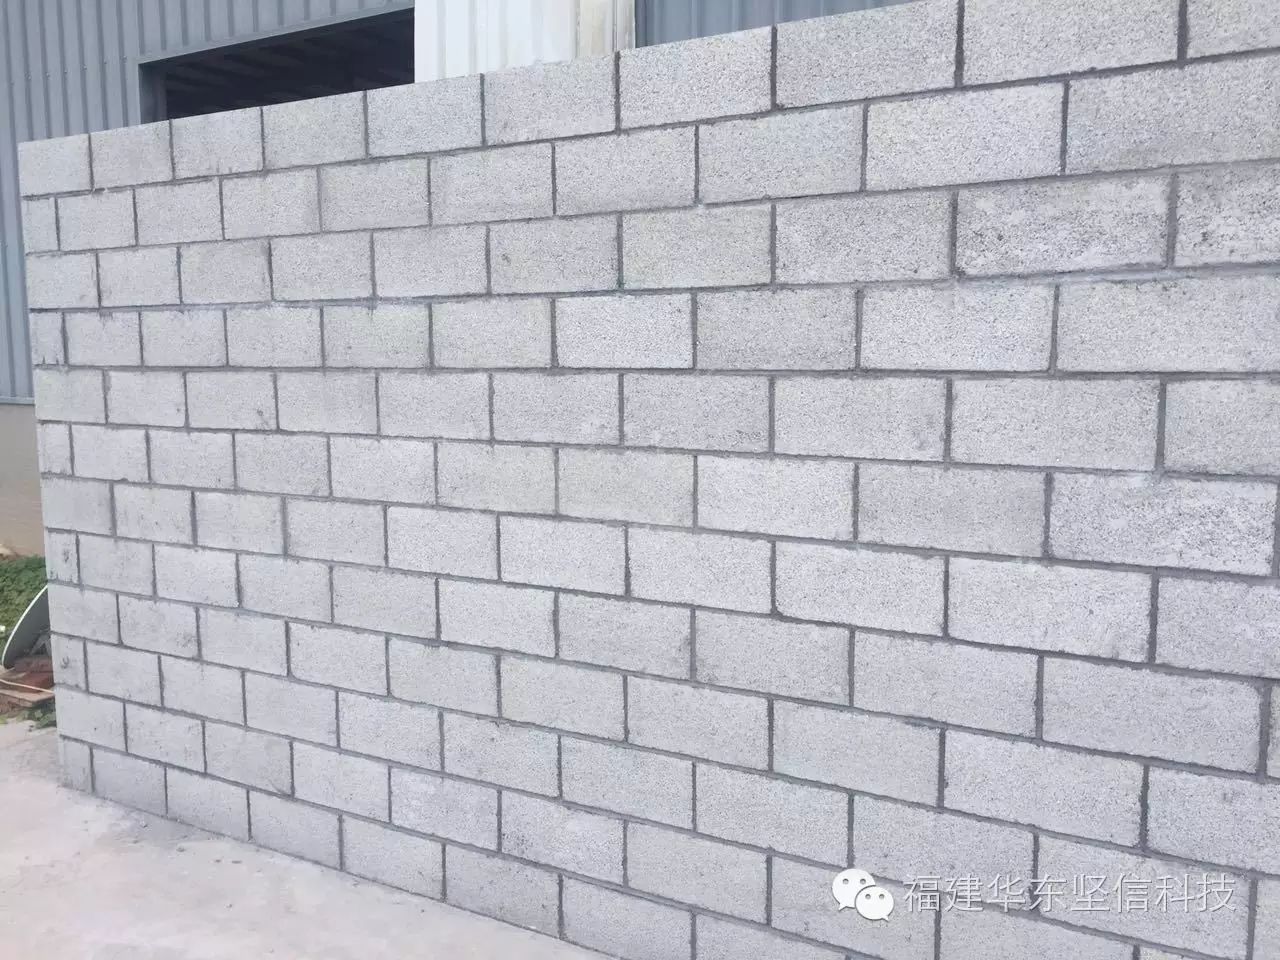 王者归来——聚苯颗粒轻集料混凝土砌块砖新型墙材项目推介